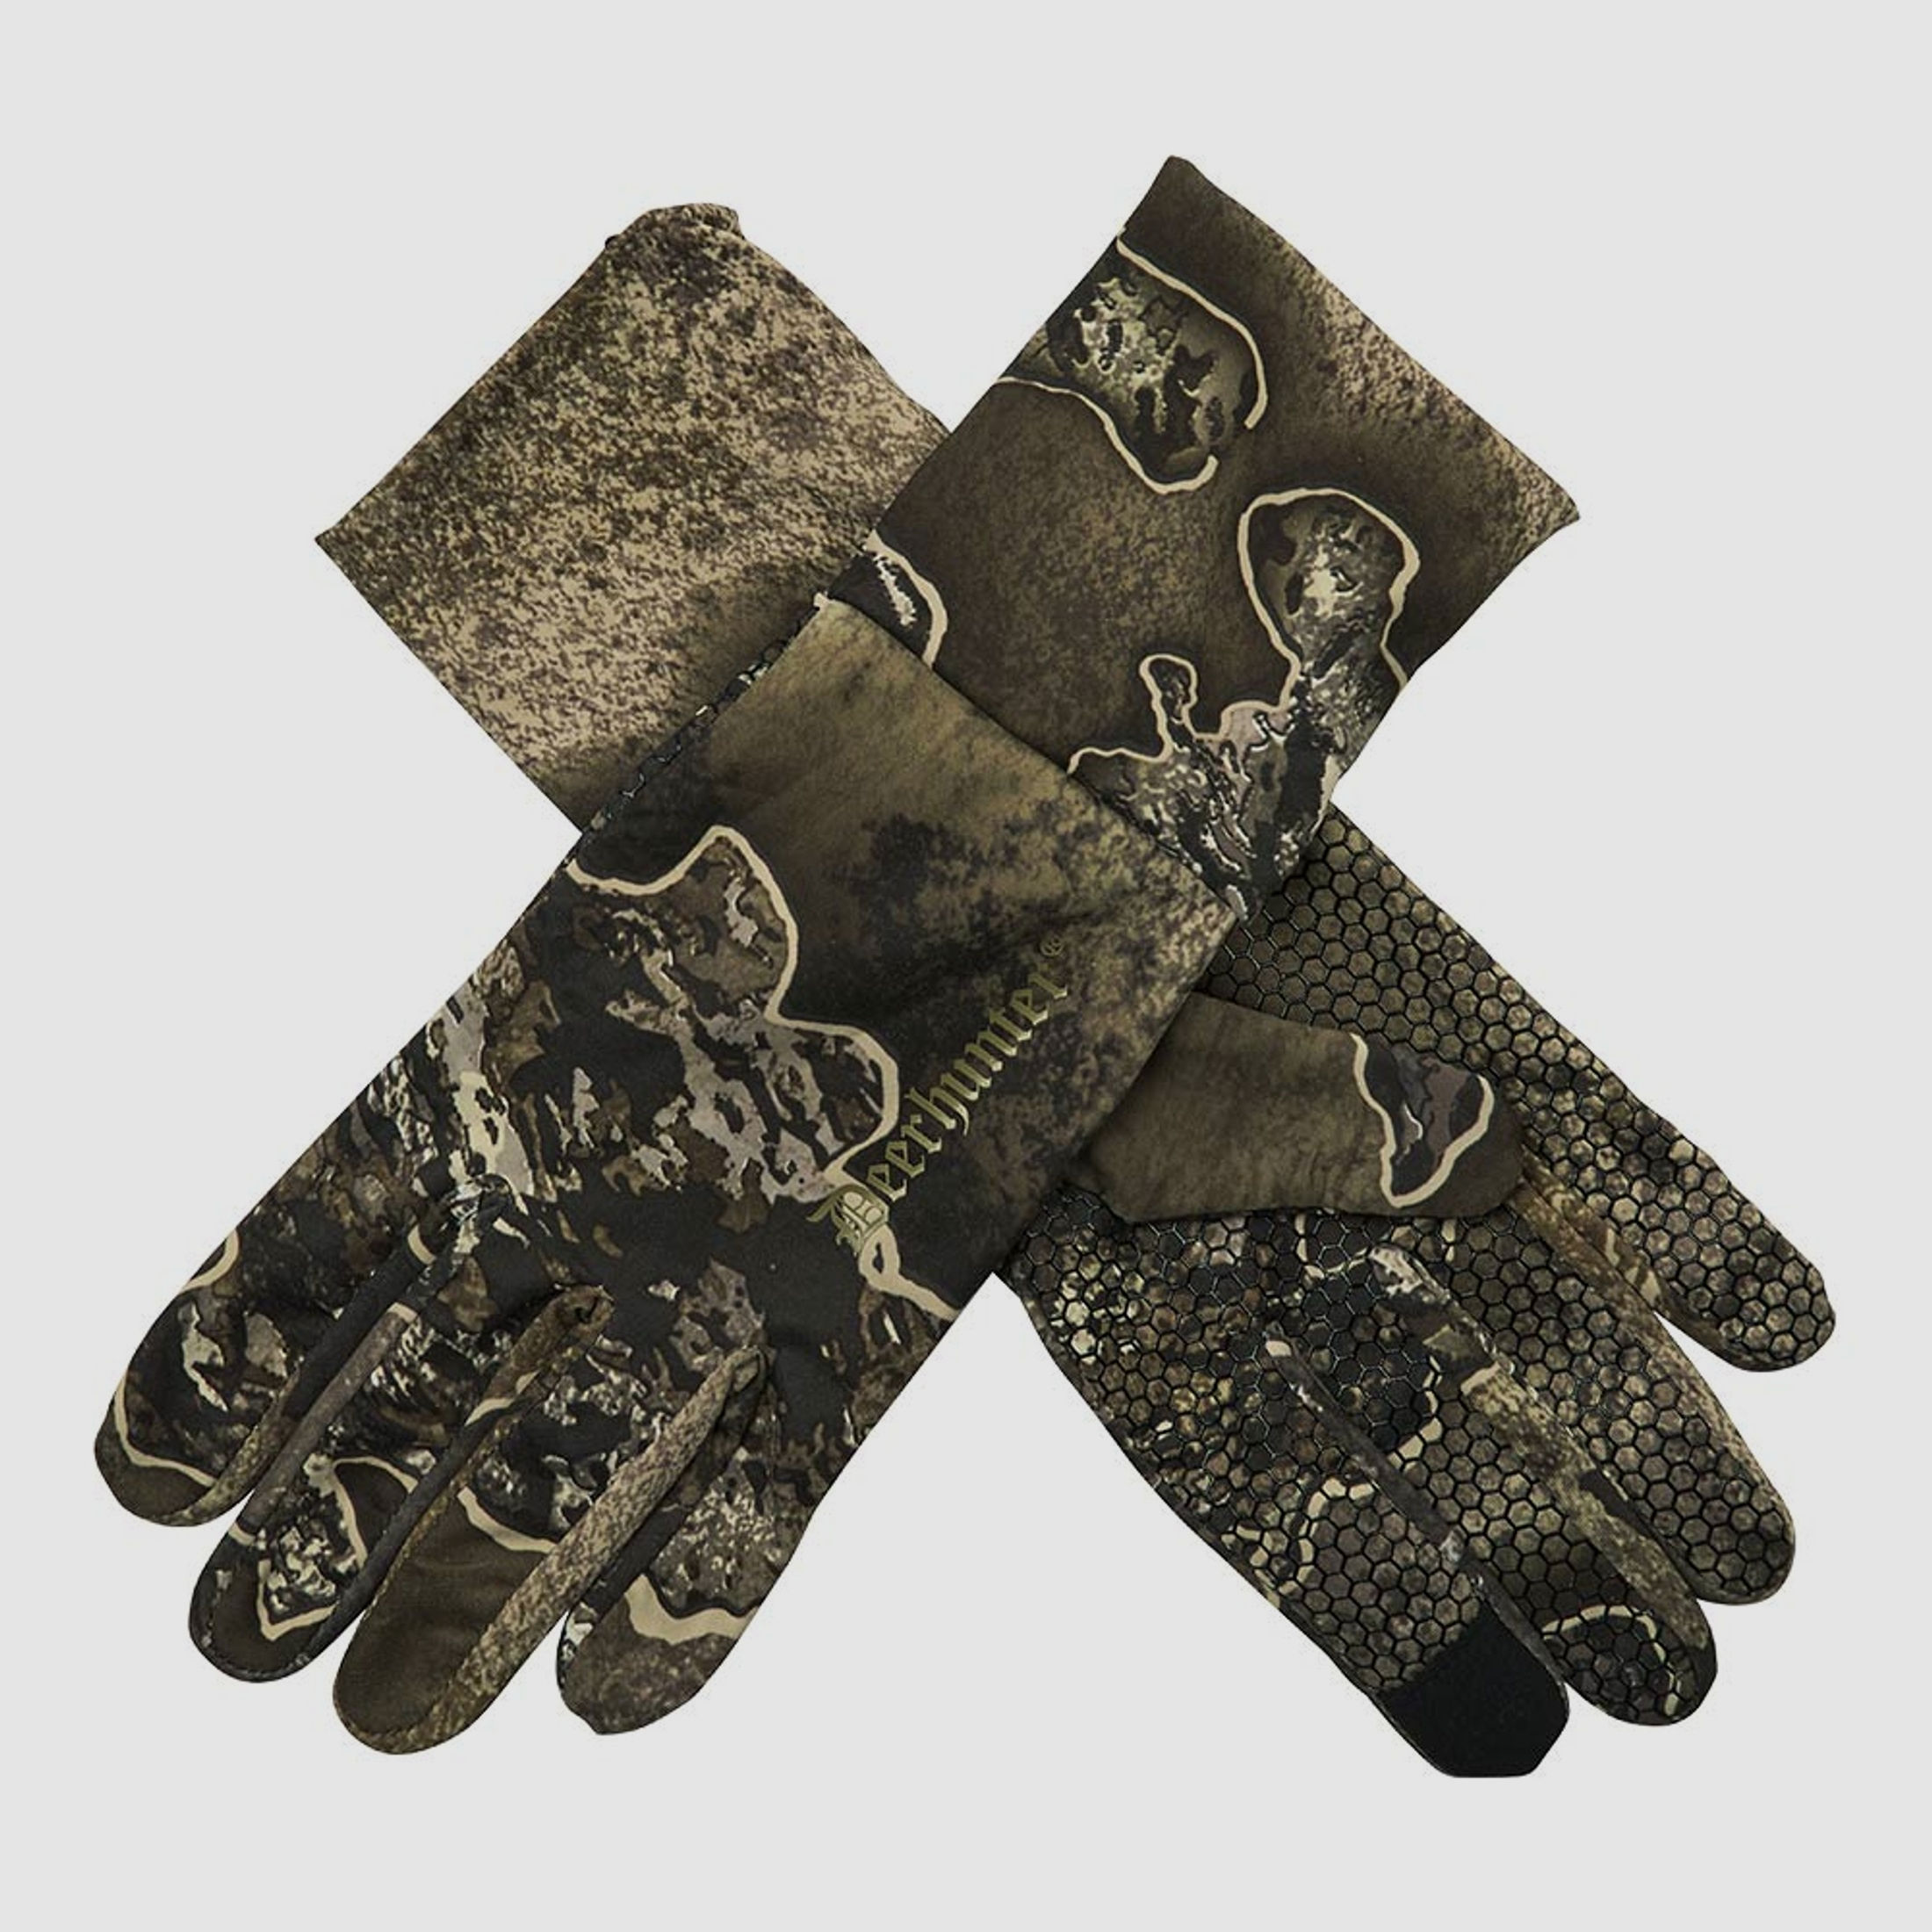 Deerhunter Handschuhe Excape